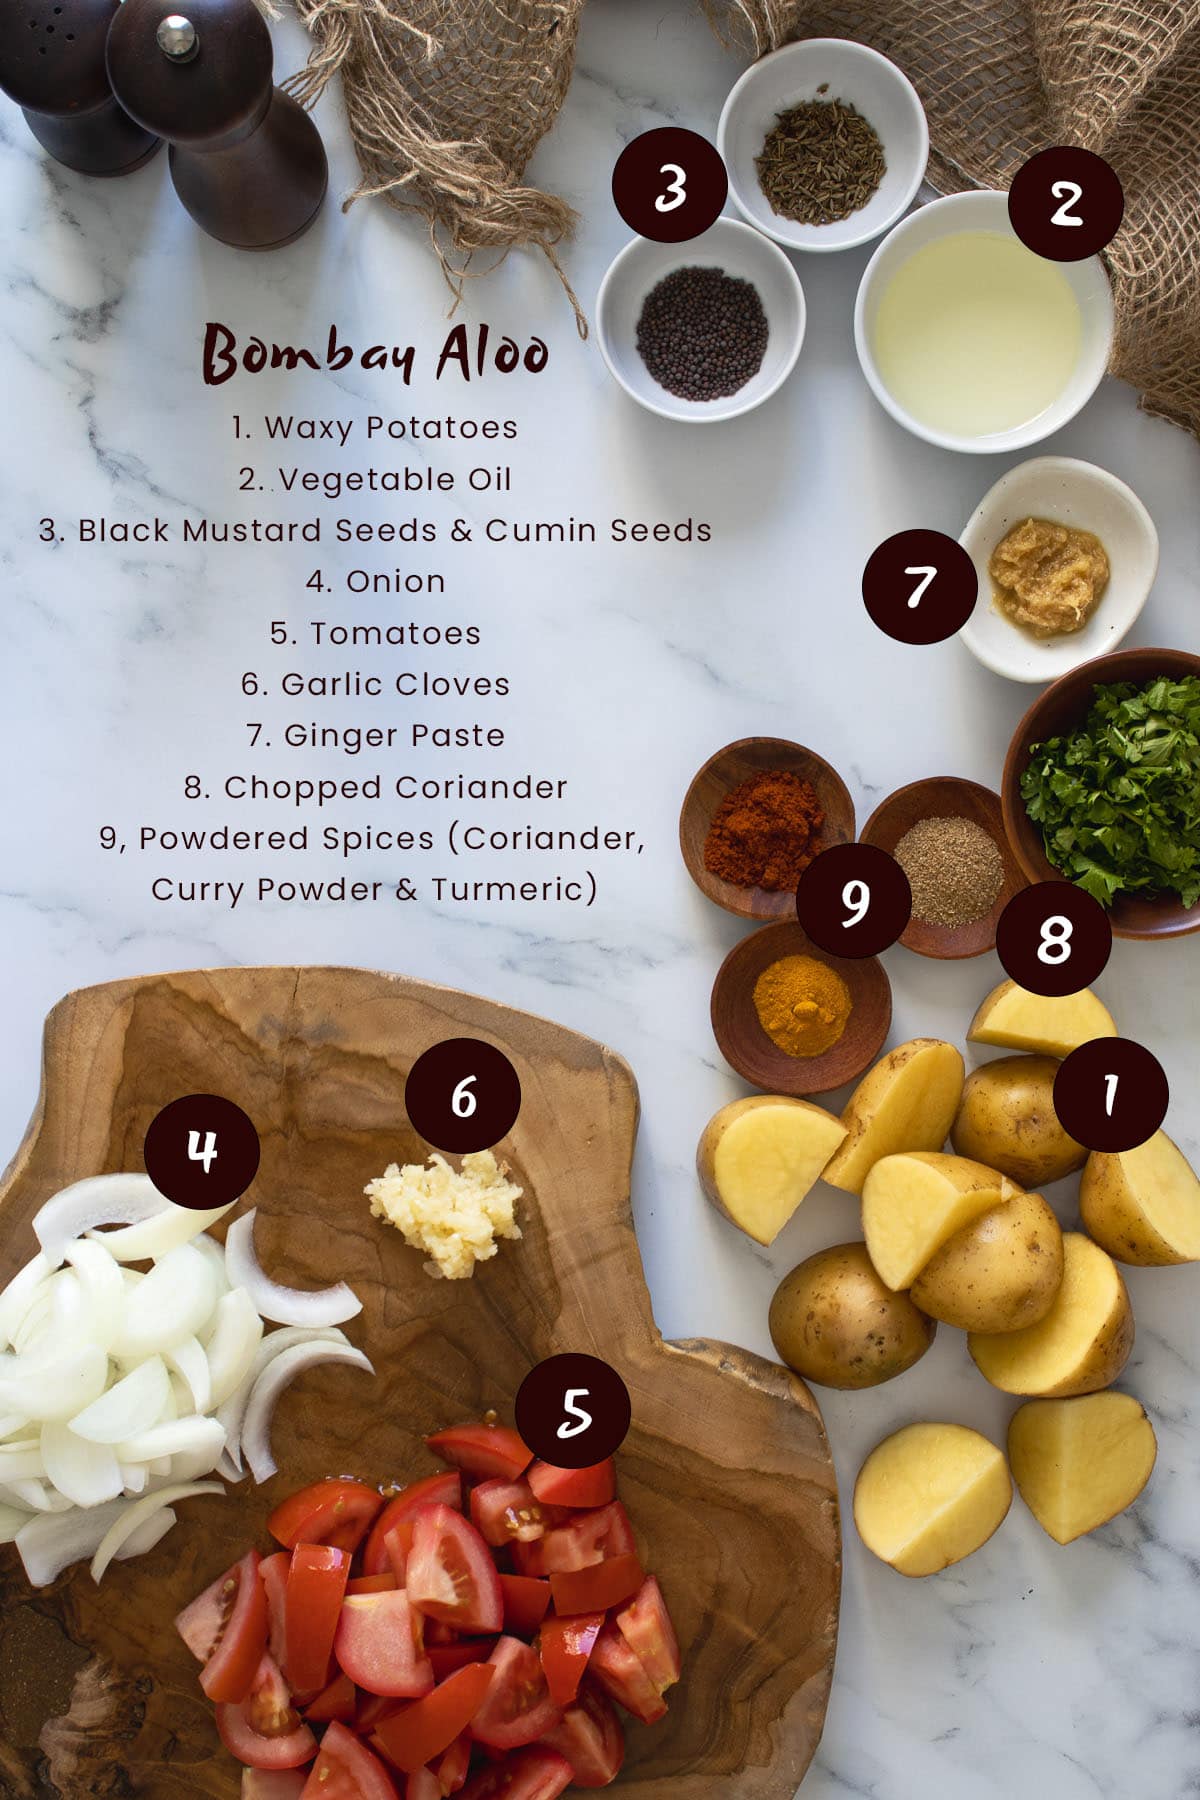 Bombay Aloo Ingredients